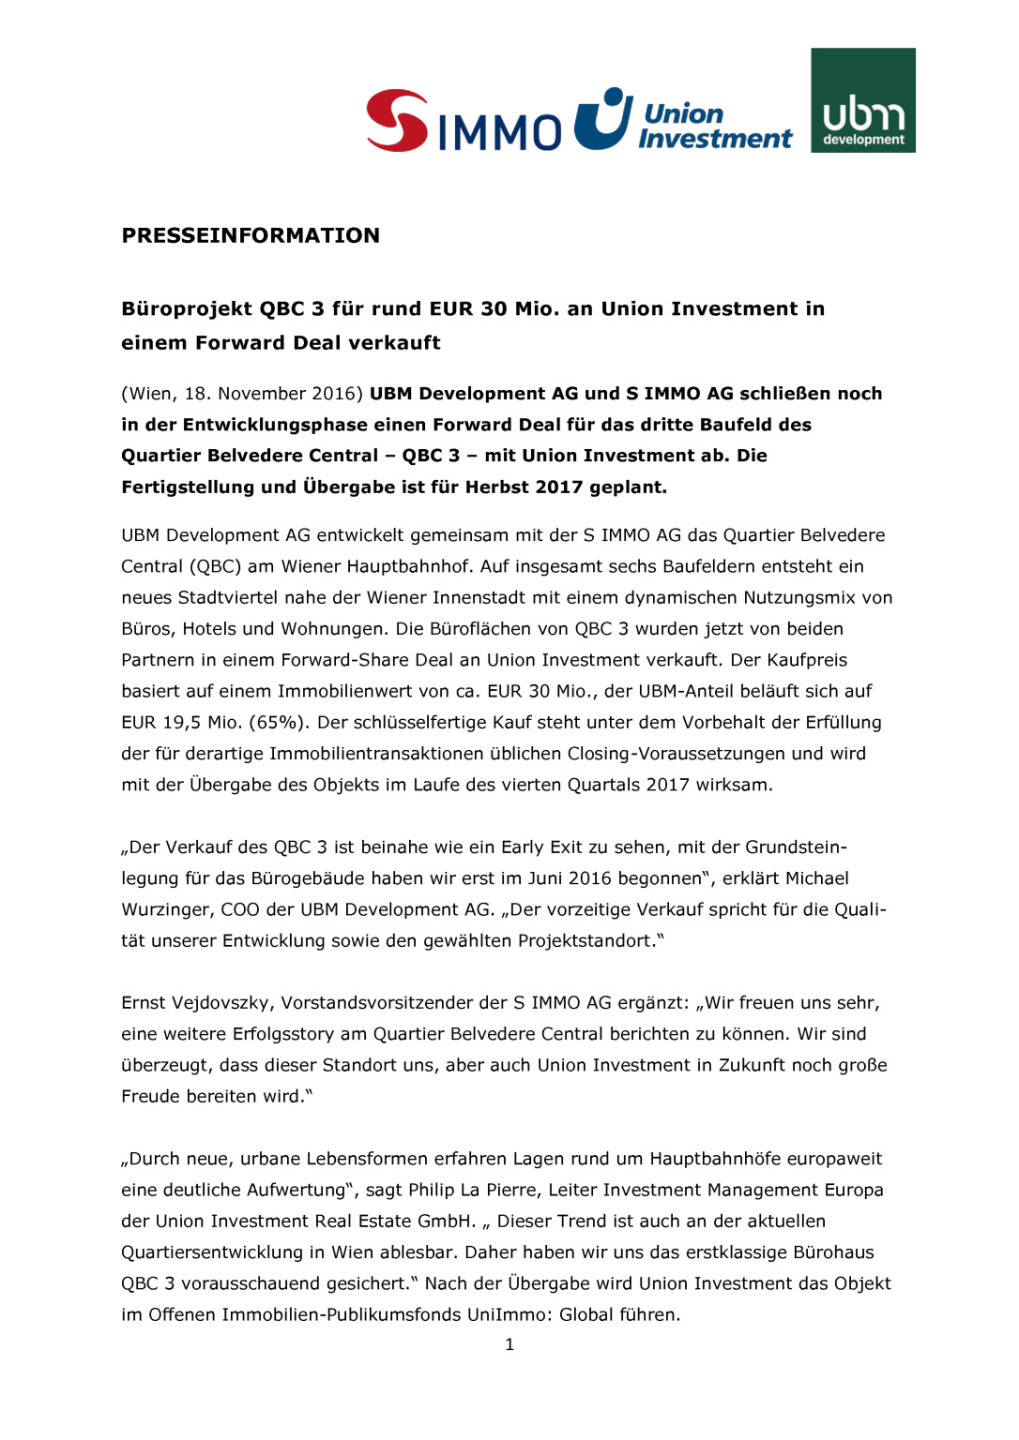 UBM/S Immo: Büroprojekt QBC 3 für rund EUR 30 Mio. an Union Investment in einem Forward Deal verkauft, Seite 1/4, komplettes Dokument unter http://boerse-social.com/static/uploads/file_1985_ubms_immo_bueroprojekt_qbc_3_fur_rund_eur_30_mio_an_union_investment_in_einem_forward_deal_verkauft.pdf